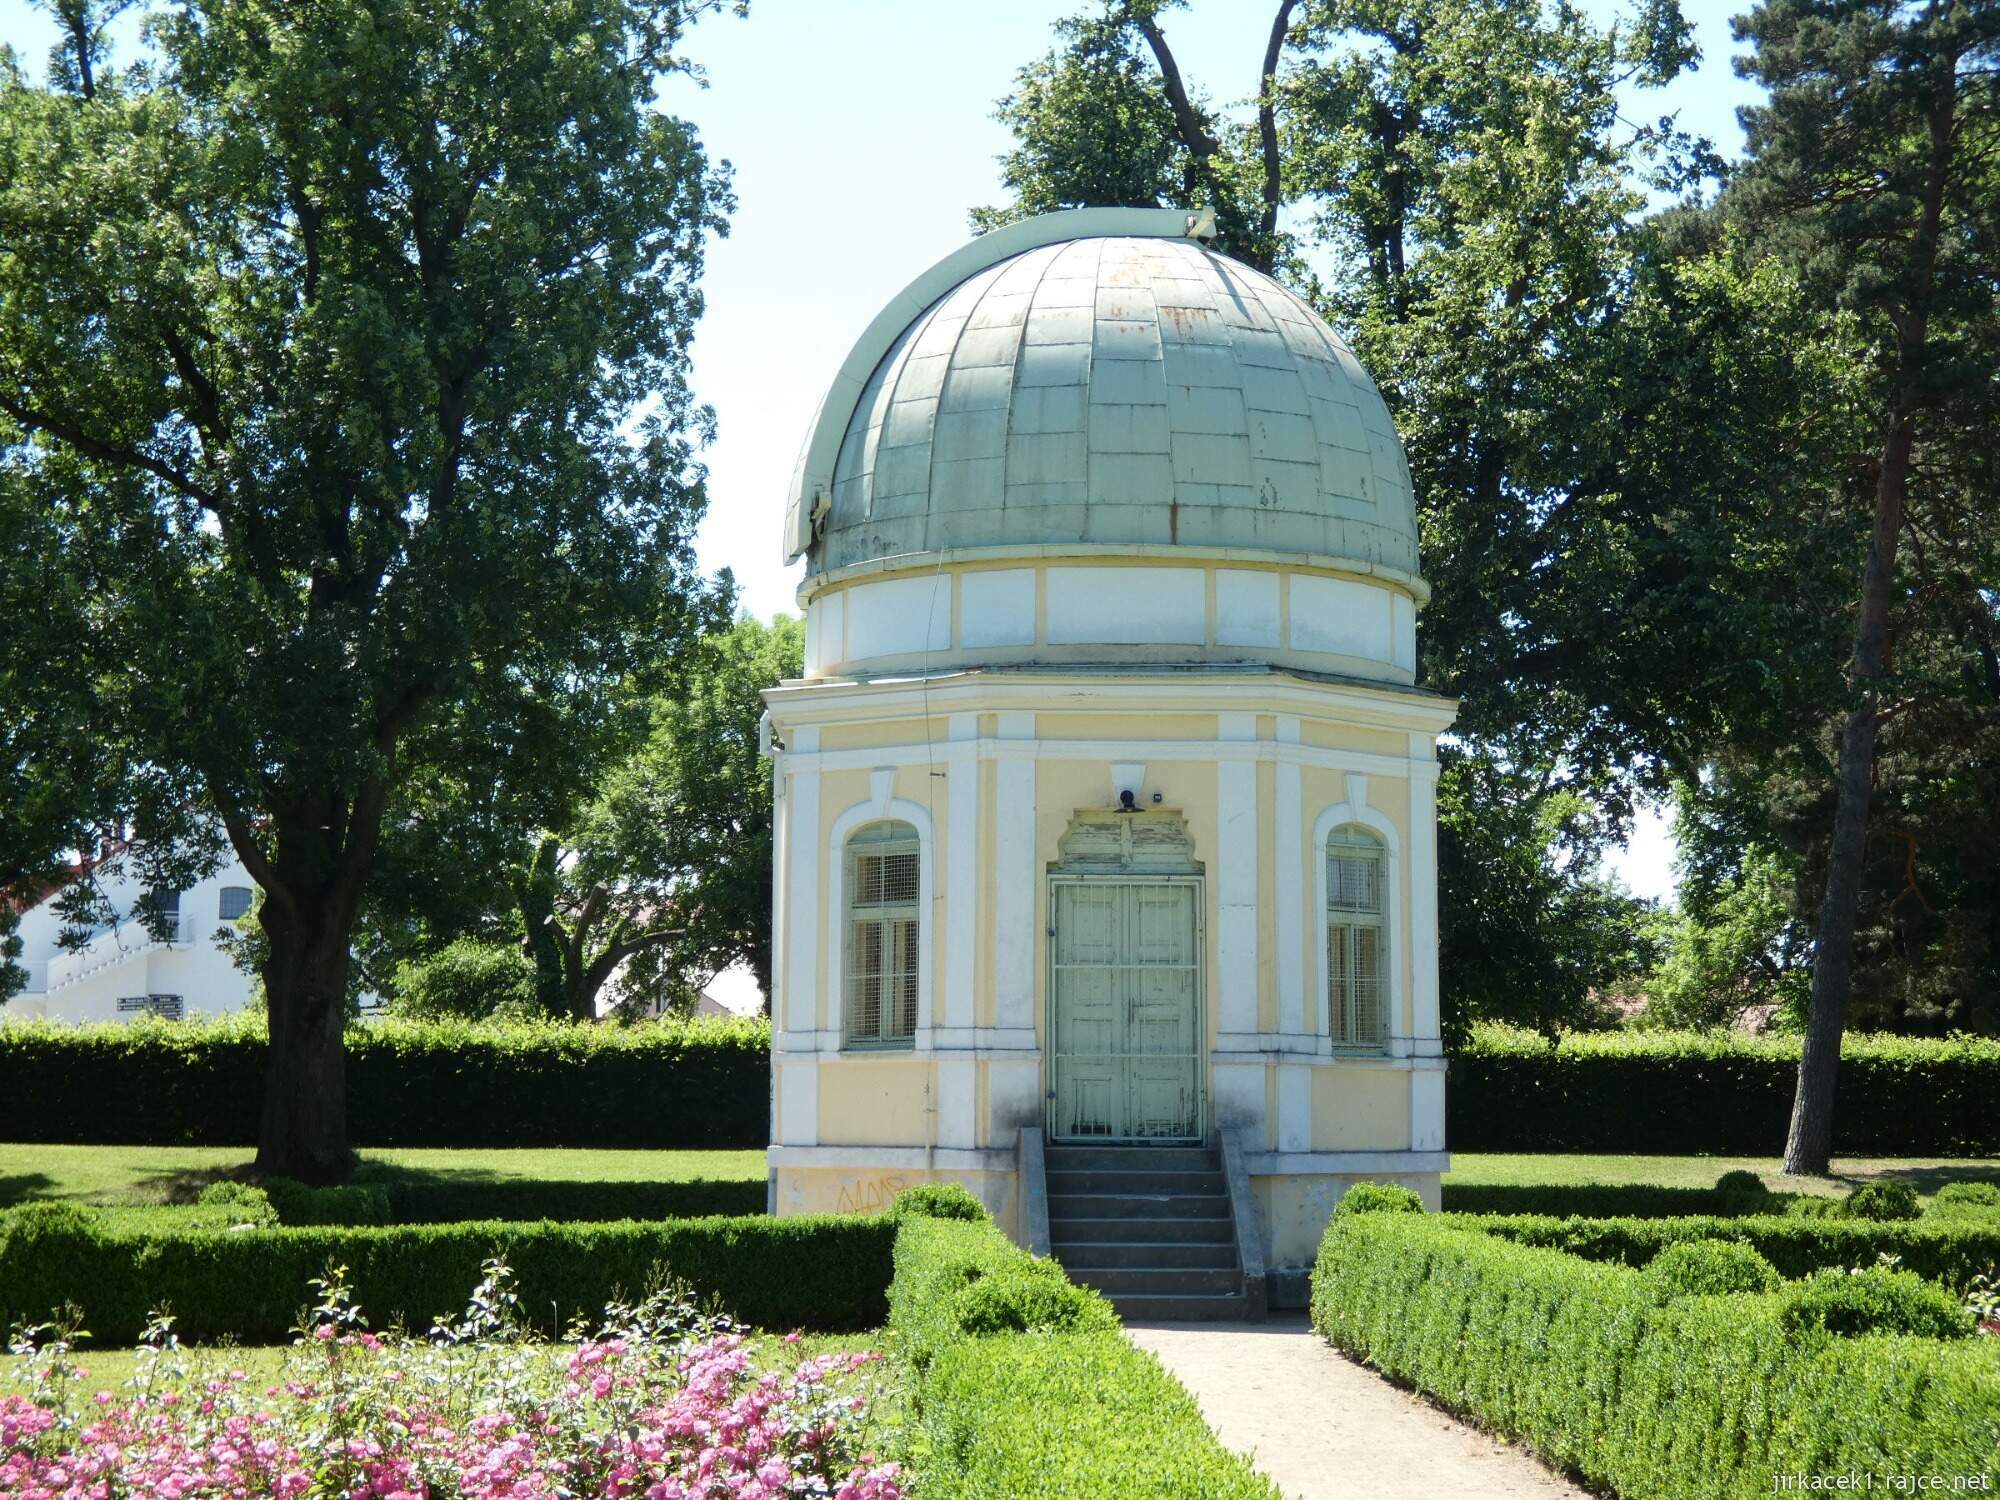 E - Holešov - zámek 086 - hvězdárna v zámeckém parku